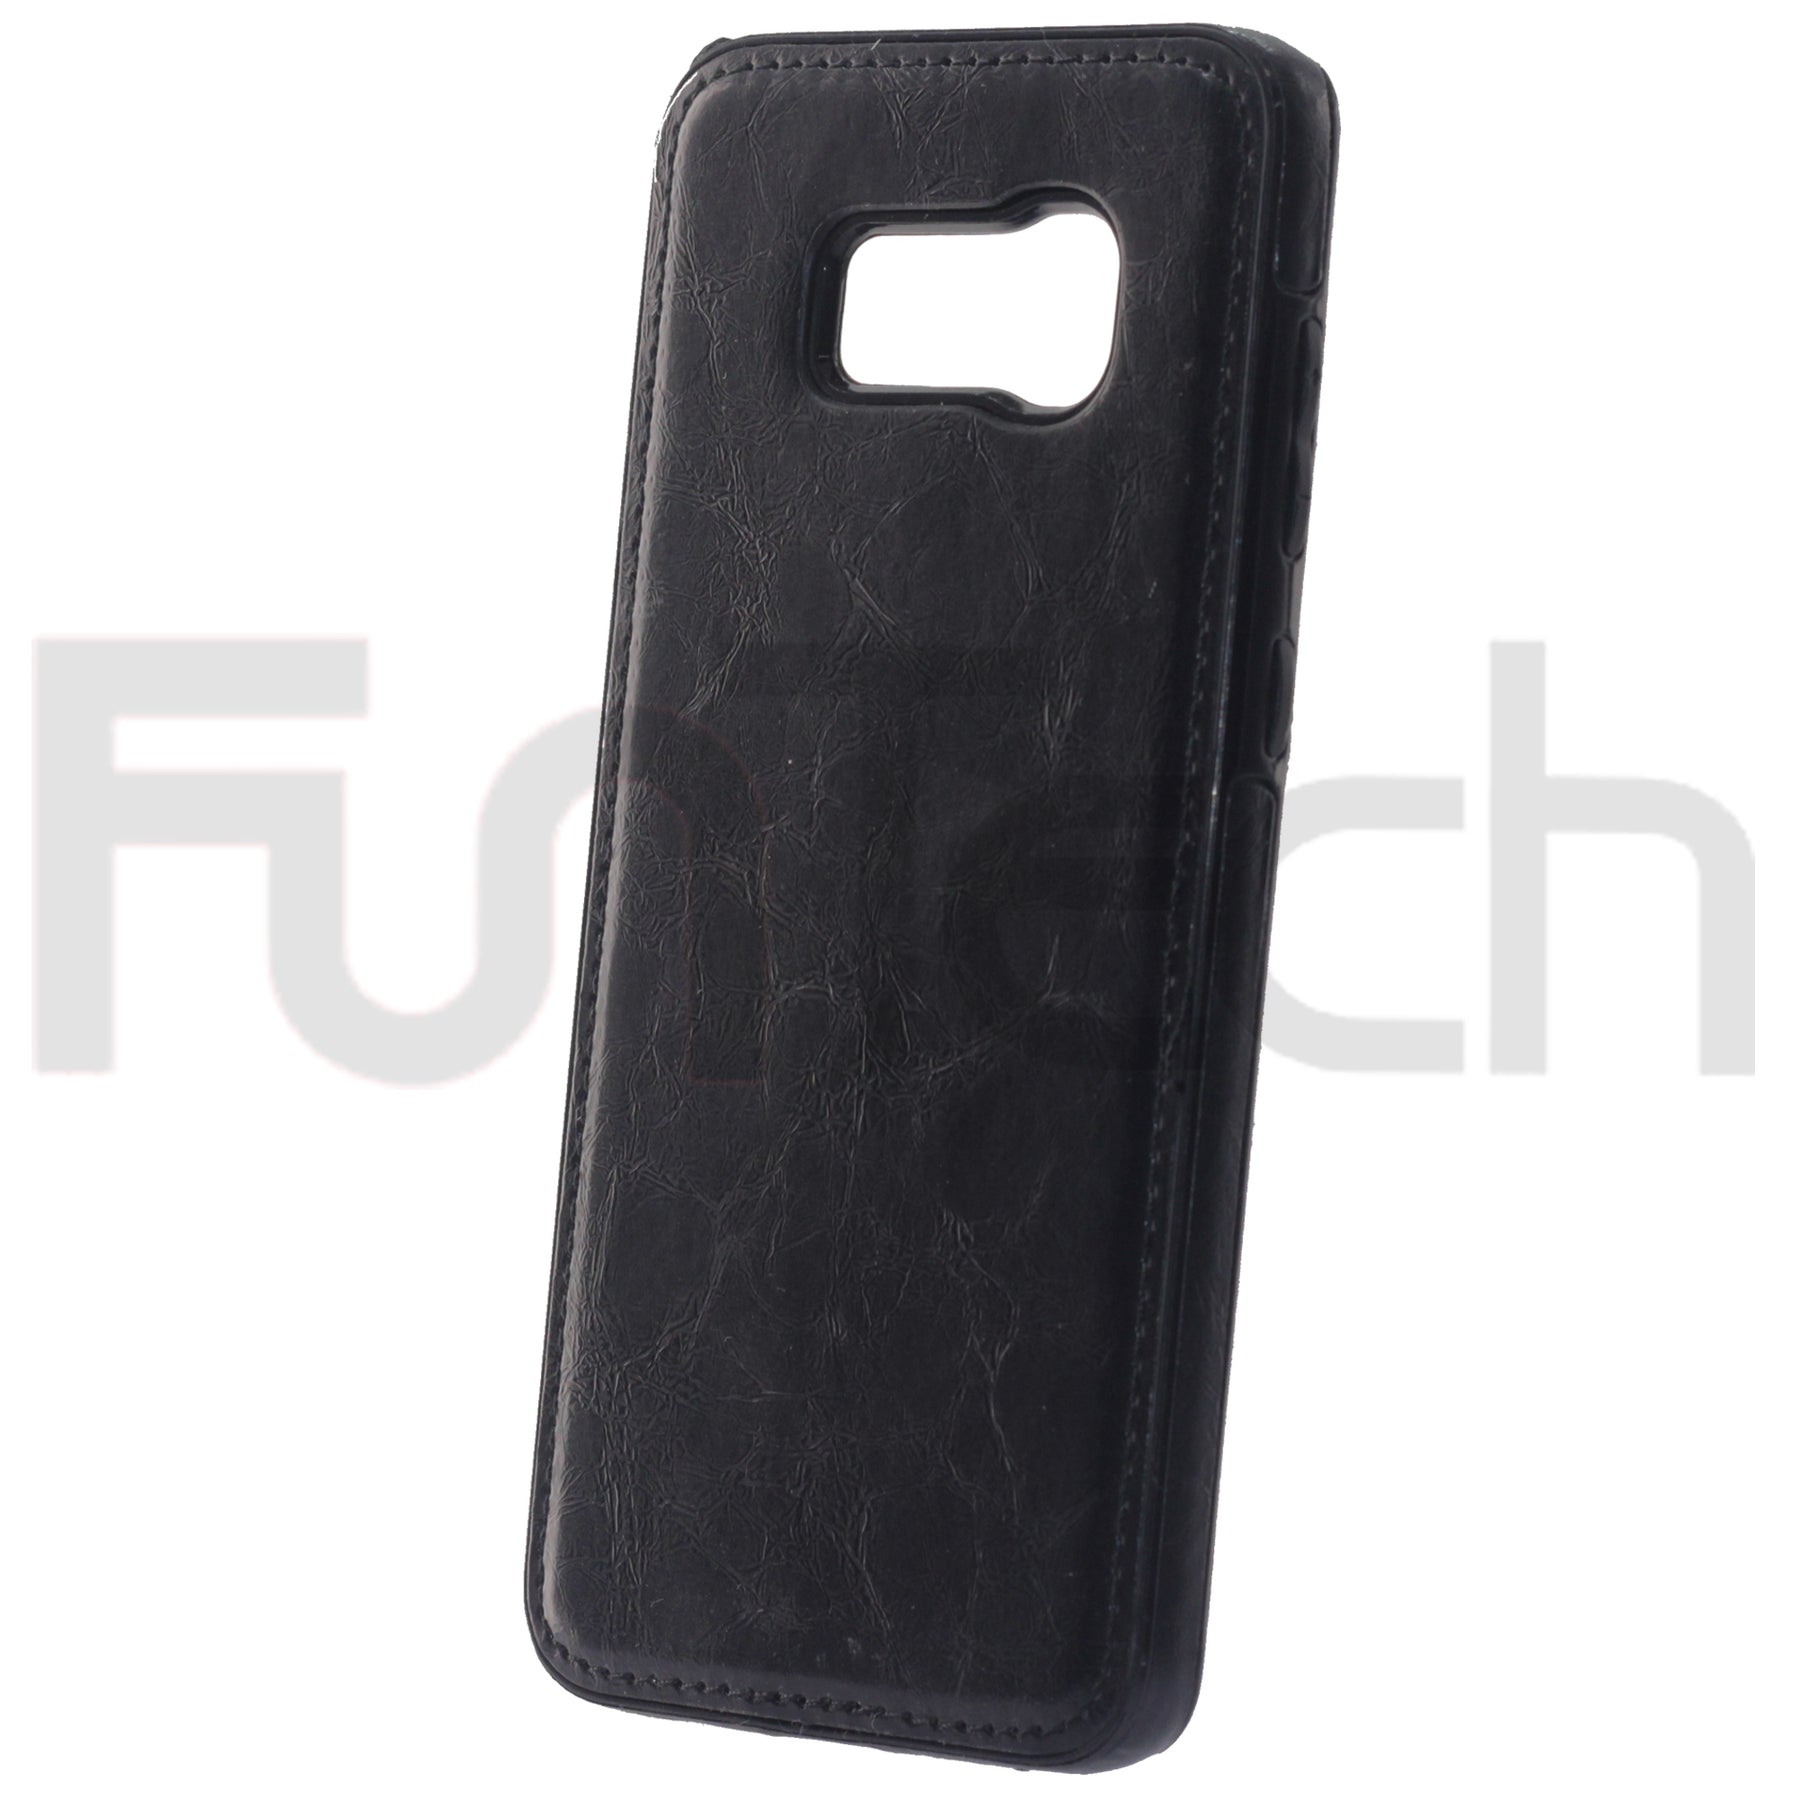 Samsung S8+, Leather Back Case, Color Black.